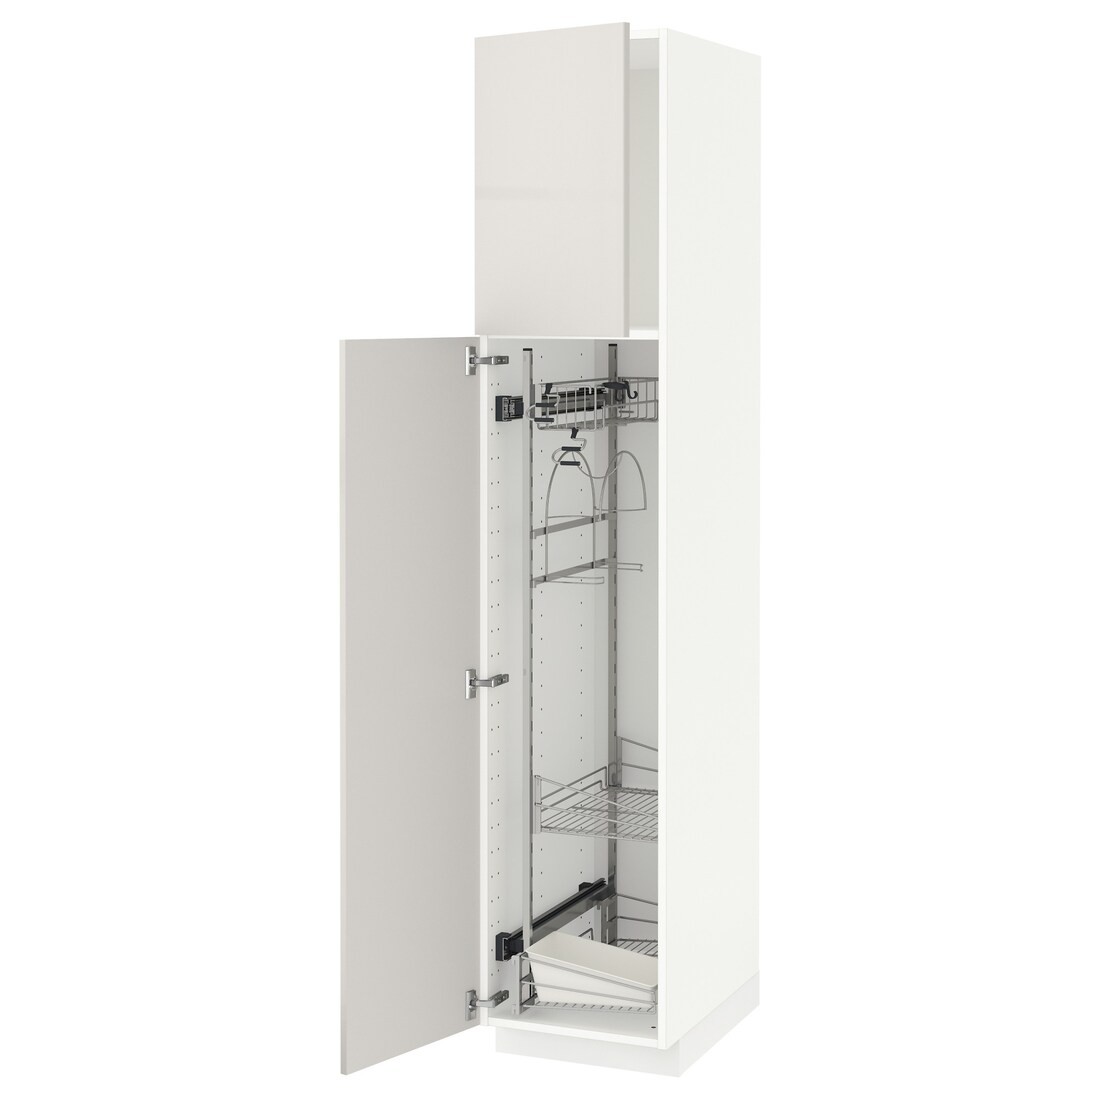 METOD МЕТОД Высокий шкаф с отделением для аксессуаров для уборки, белый / Ringhult светло-серый, 40x60x200 см